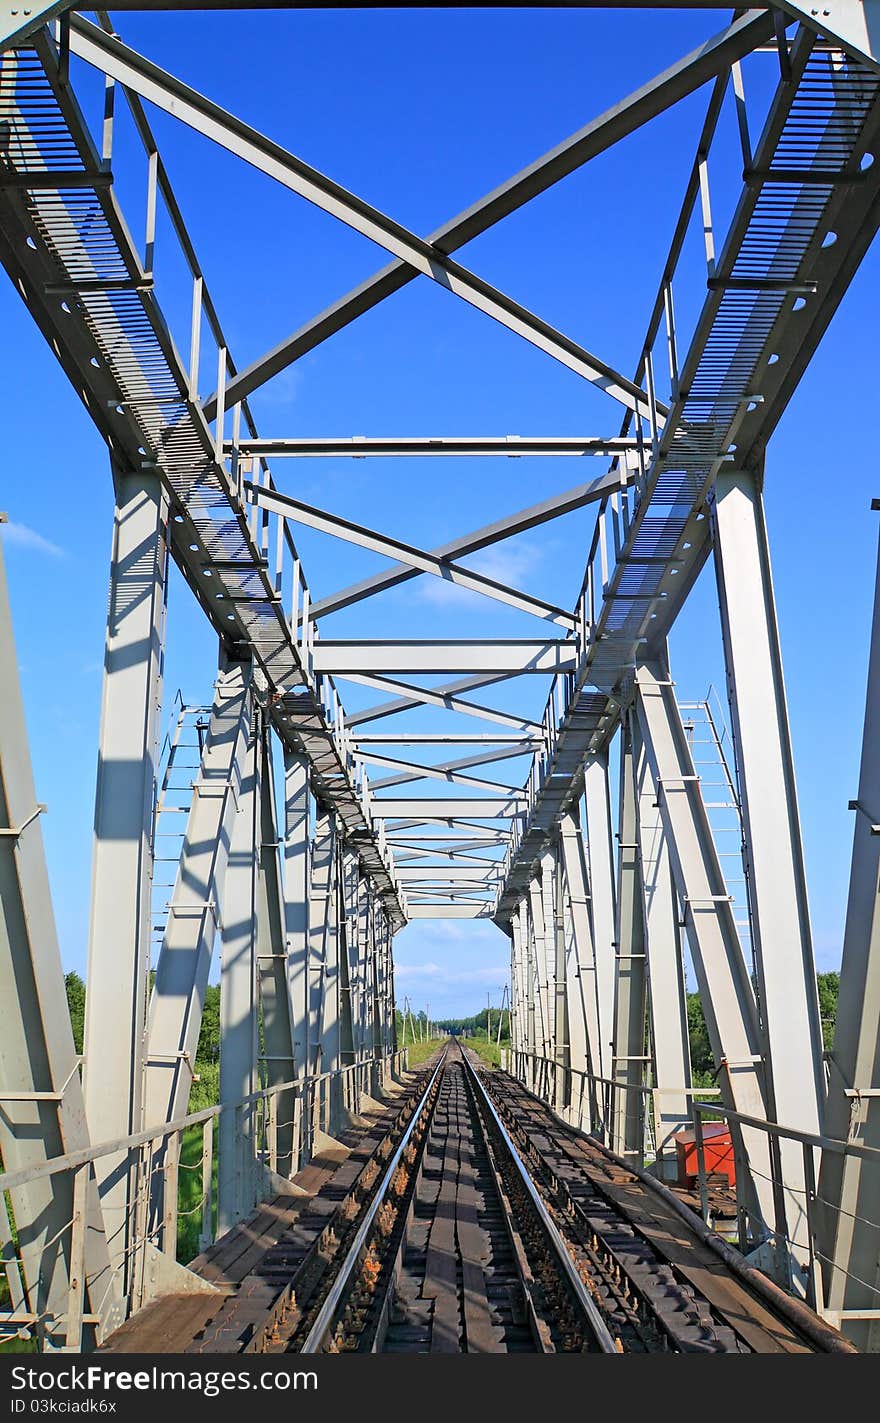 Railway bridge over a small river